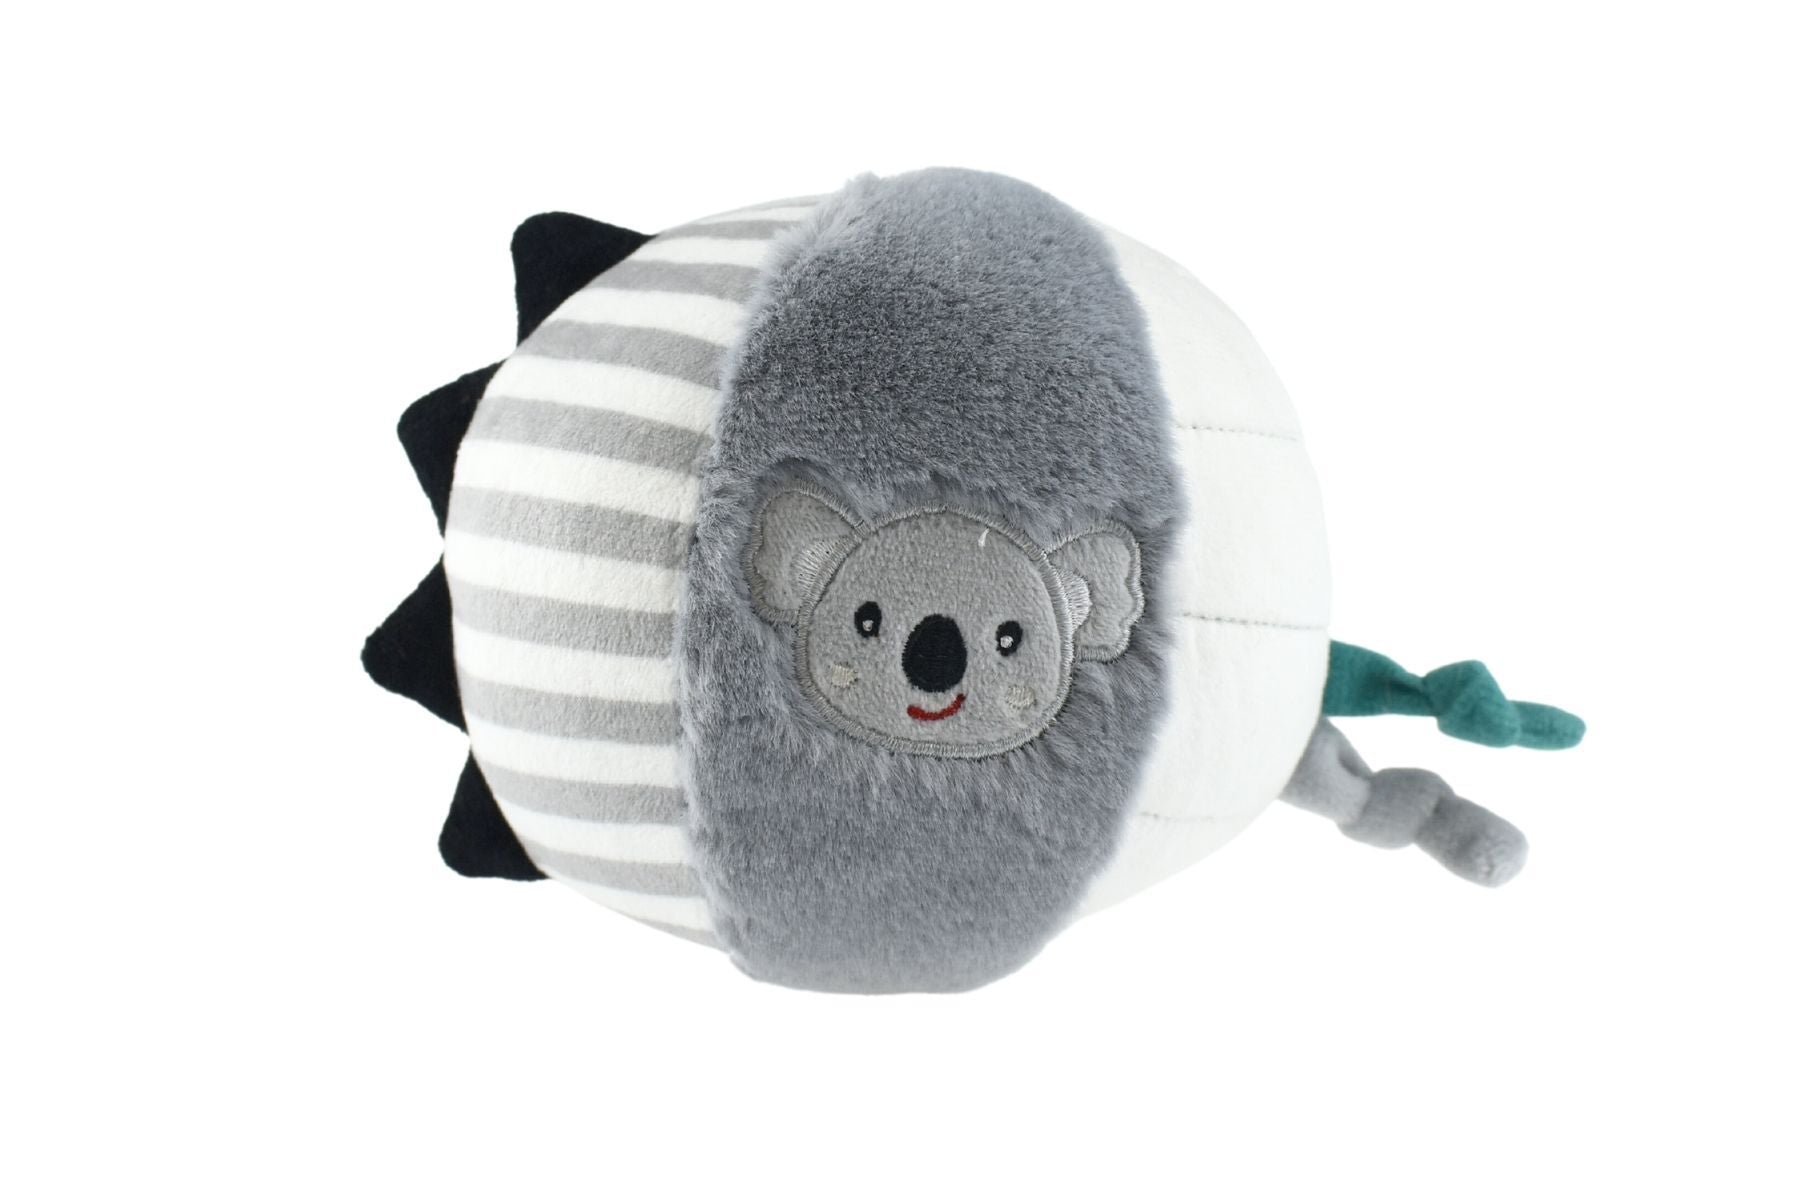 Kuddly Koala Textured Sensory Ball